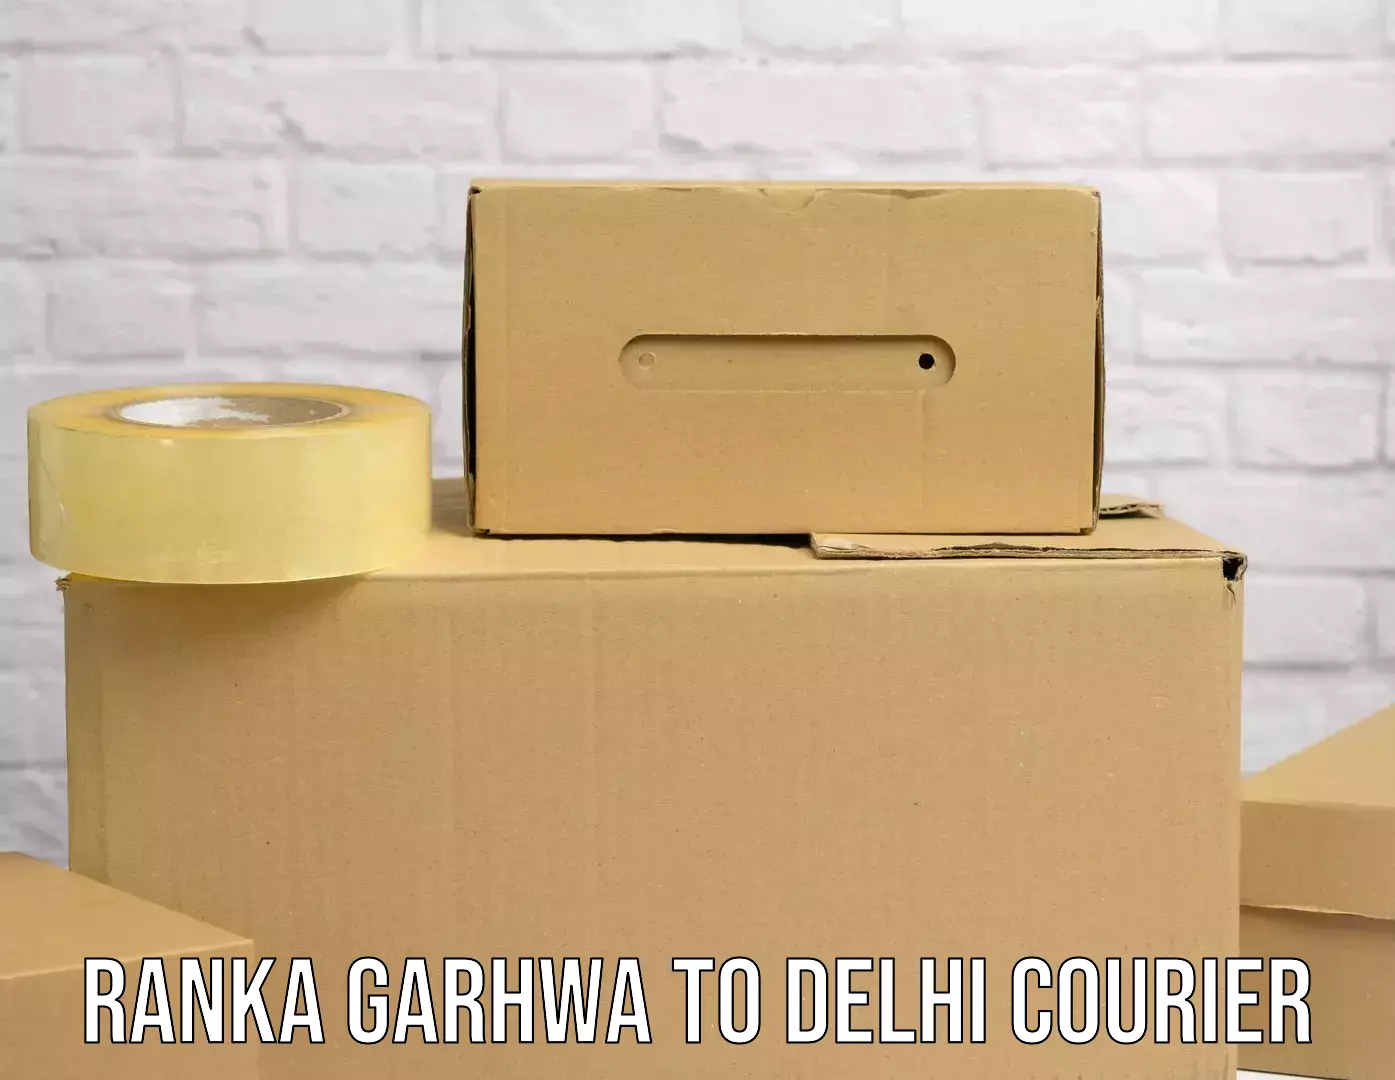 Premium courier solutions Ranka Garhwa to Jawaharlal Nehru University New Delhi